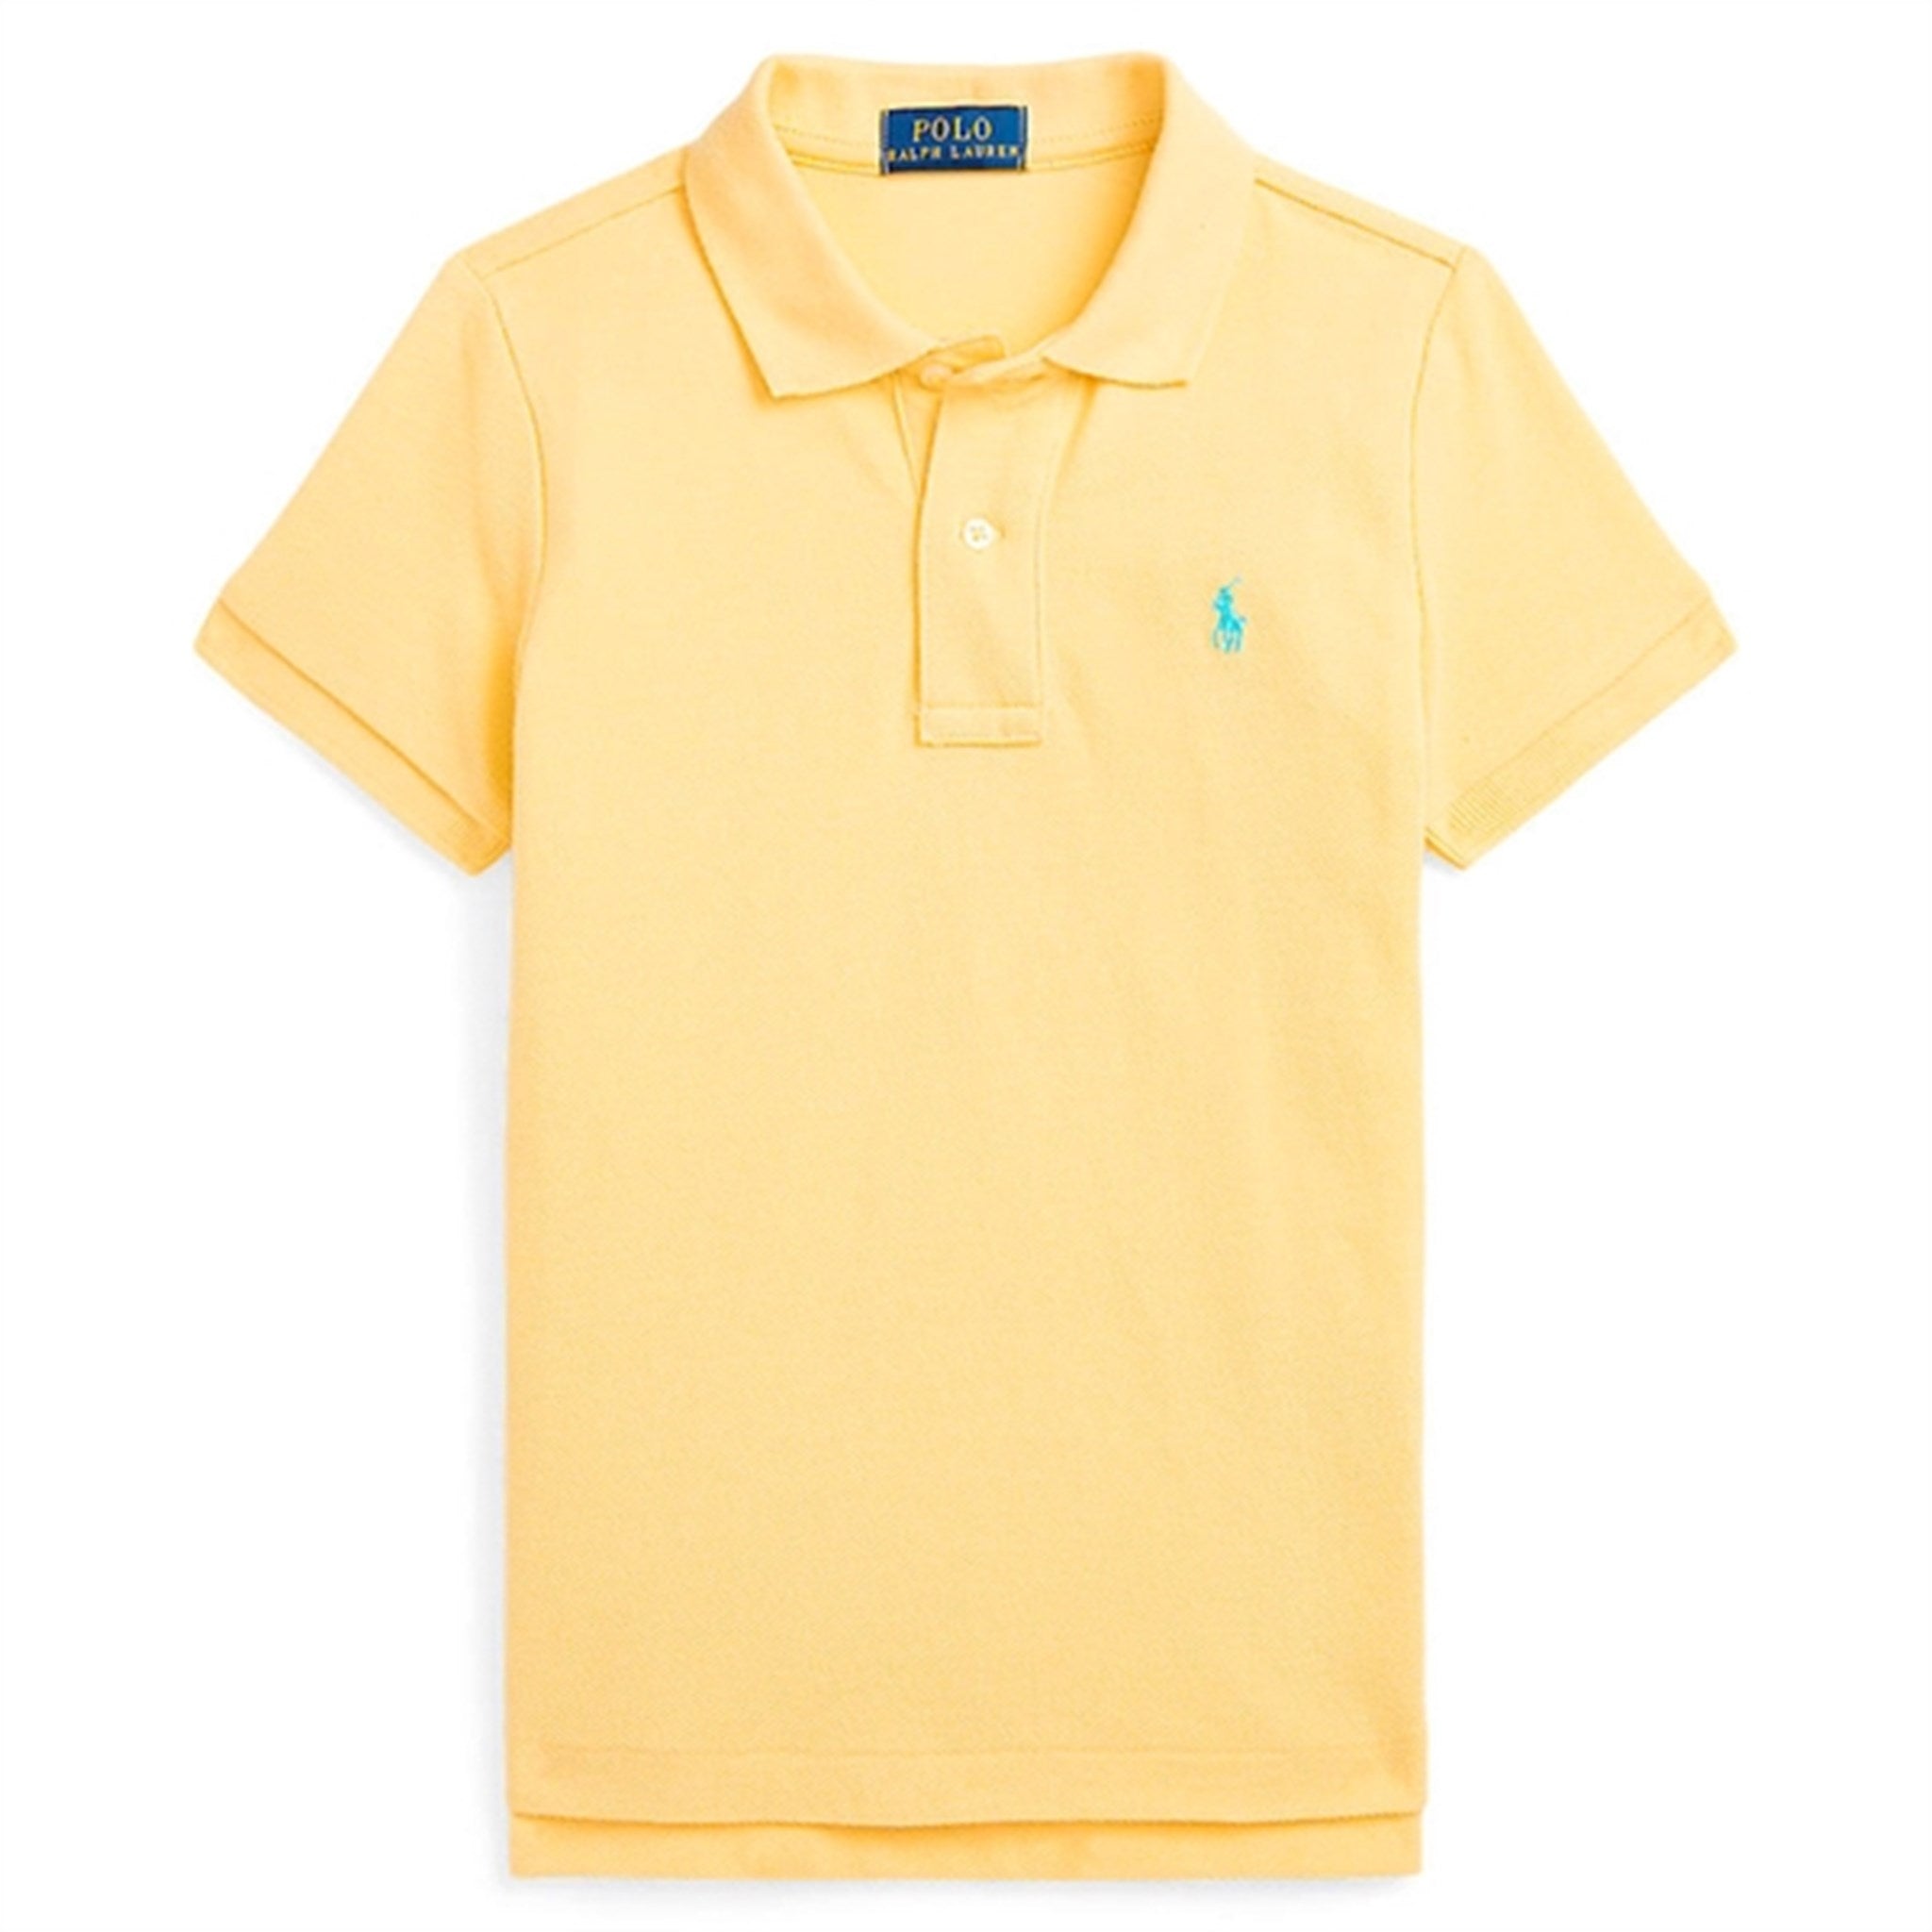 Polo Ralph Lauren T-Shirt Yellow